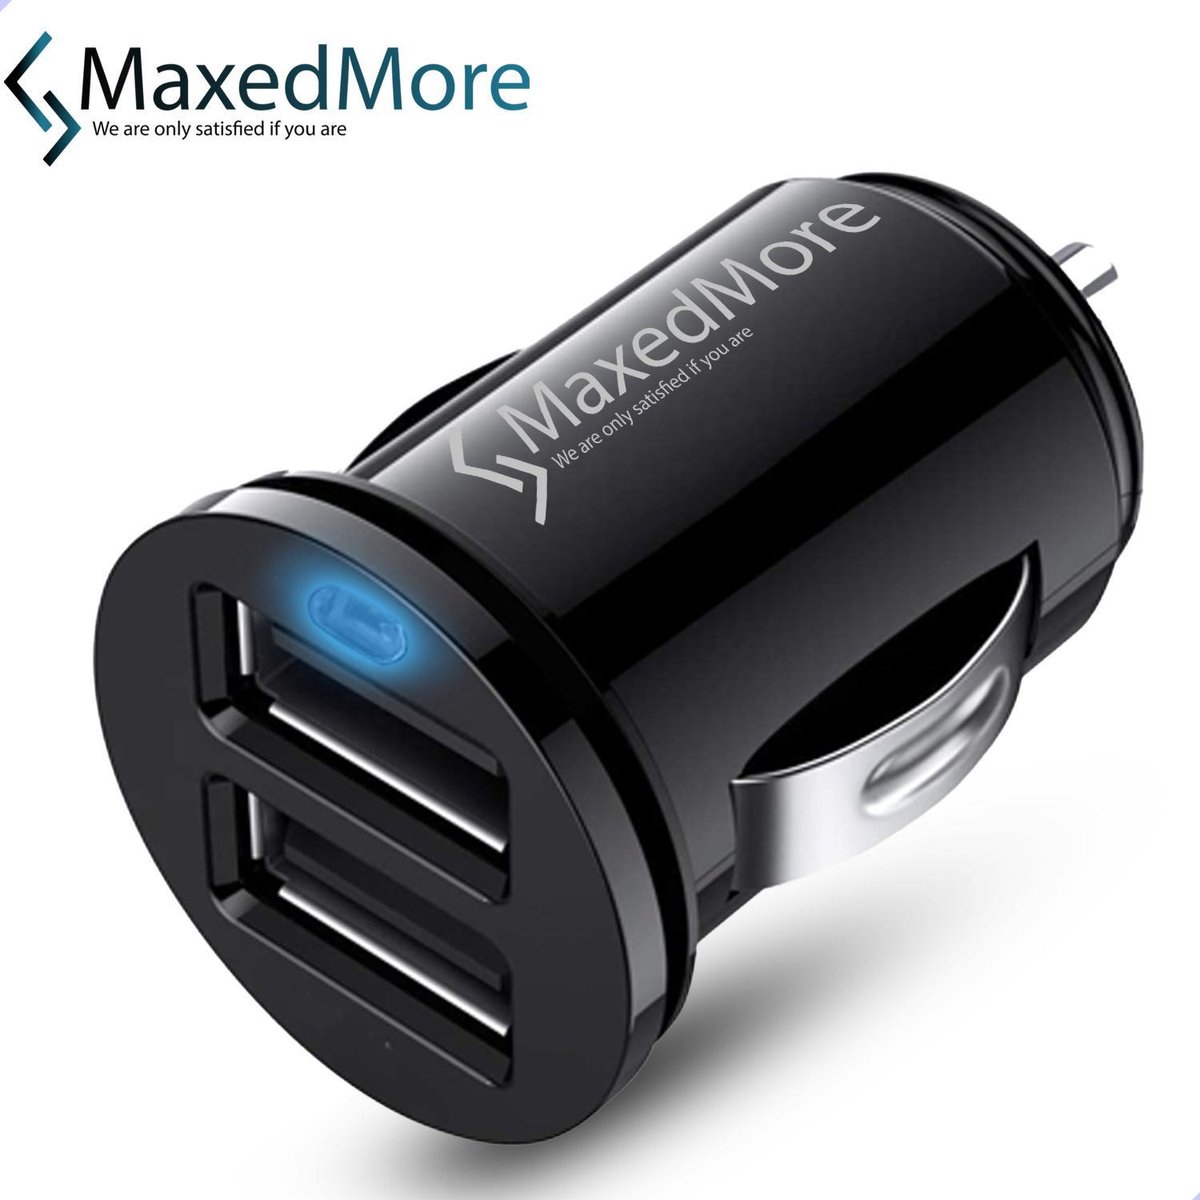 MaxedMore Mini USB Autolader (Zwart) - Auto Lader met 2 USB 2.4A Oplaad Poorten - Oplader voor Navigatie / Telefoon / Tablet in de Auto - Autostekker - Car Charger - ChargeMore